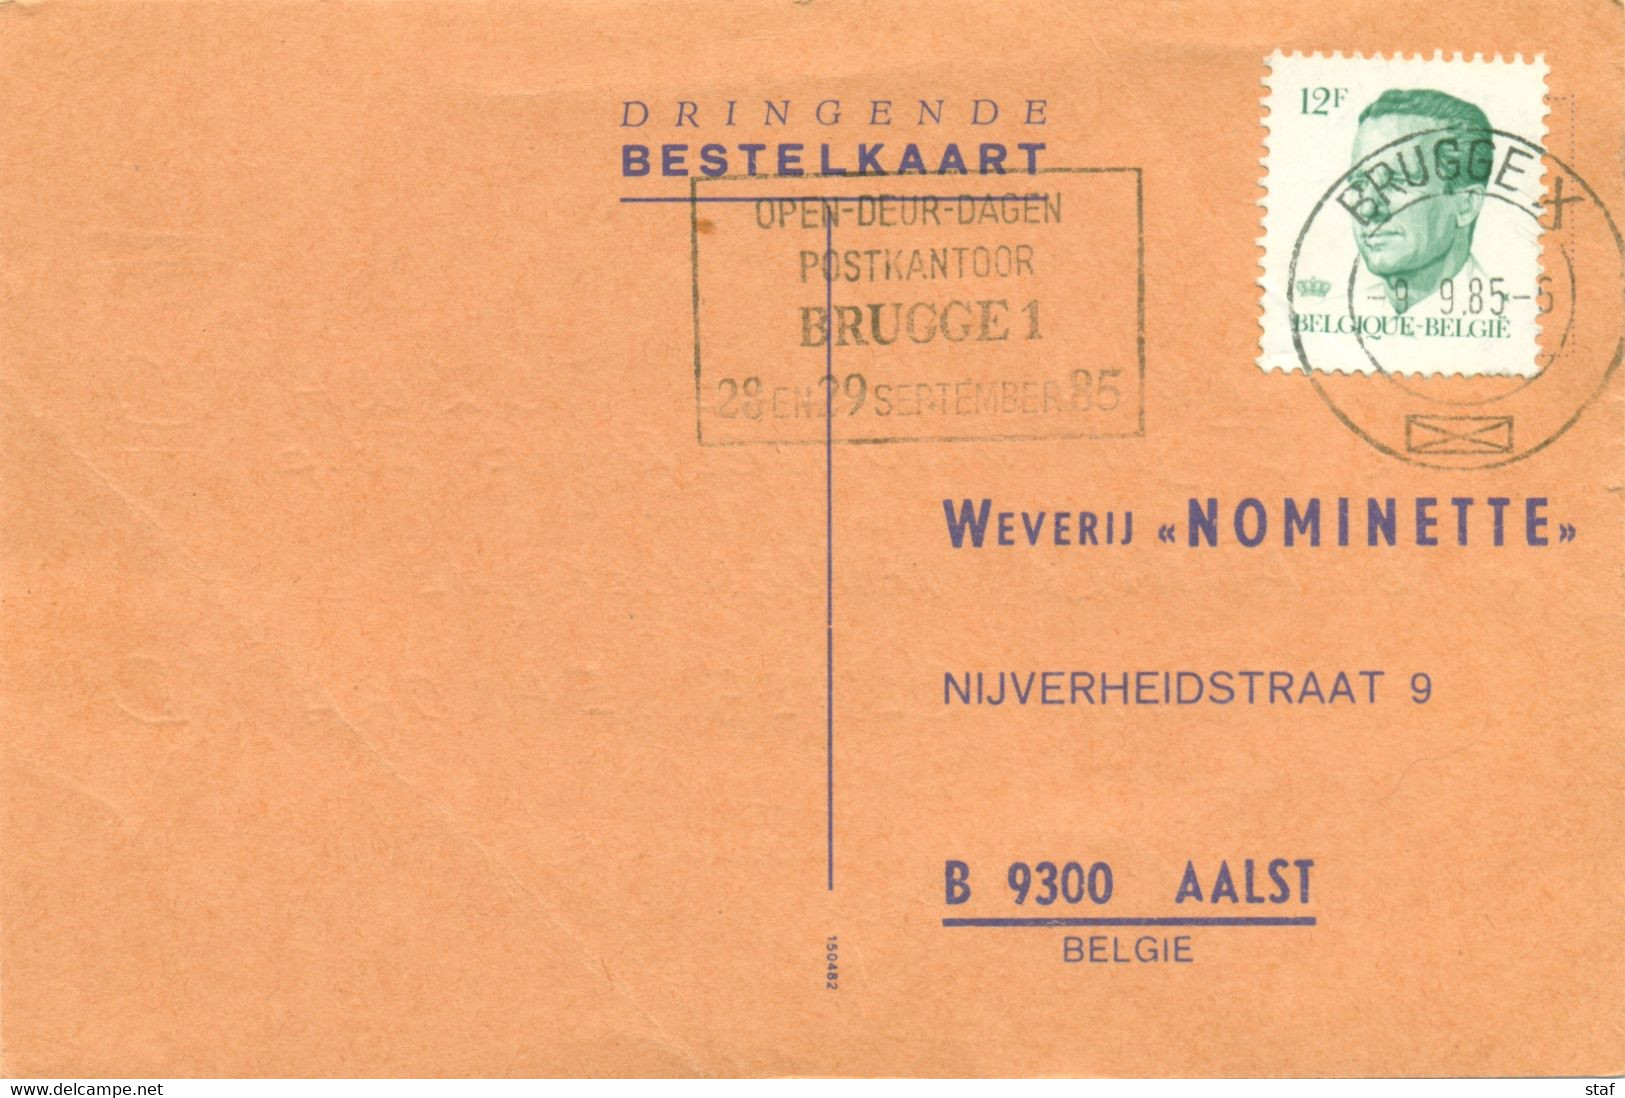 Opendeurdagen Postkantoor Brugge 1 28 En 29 September 85 - Flammes